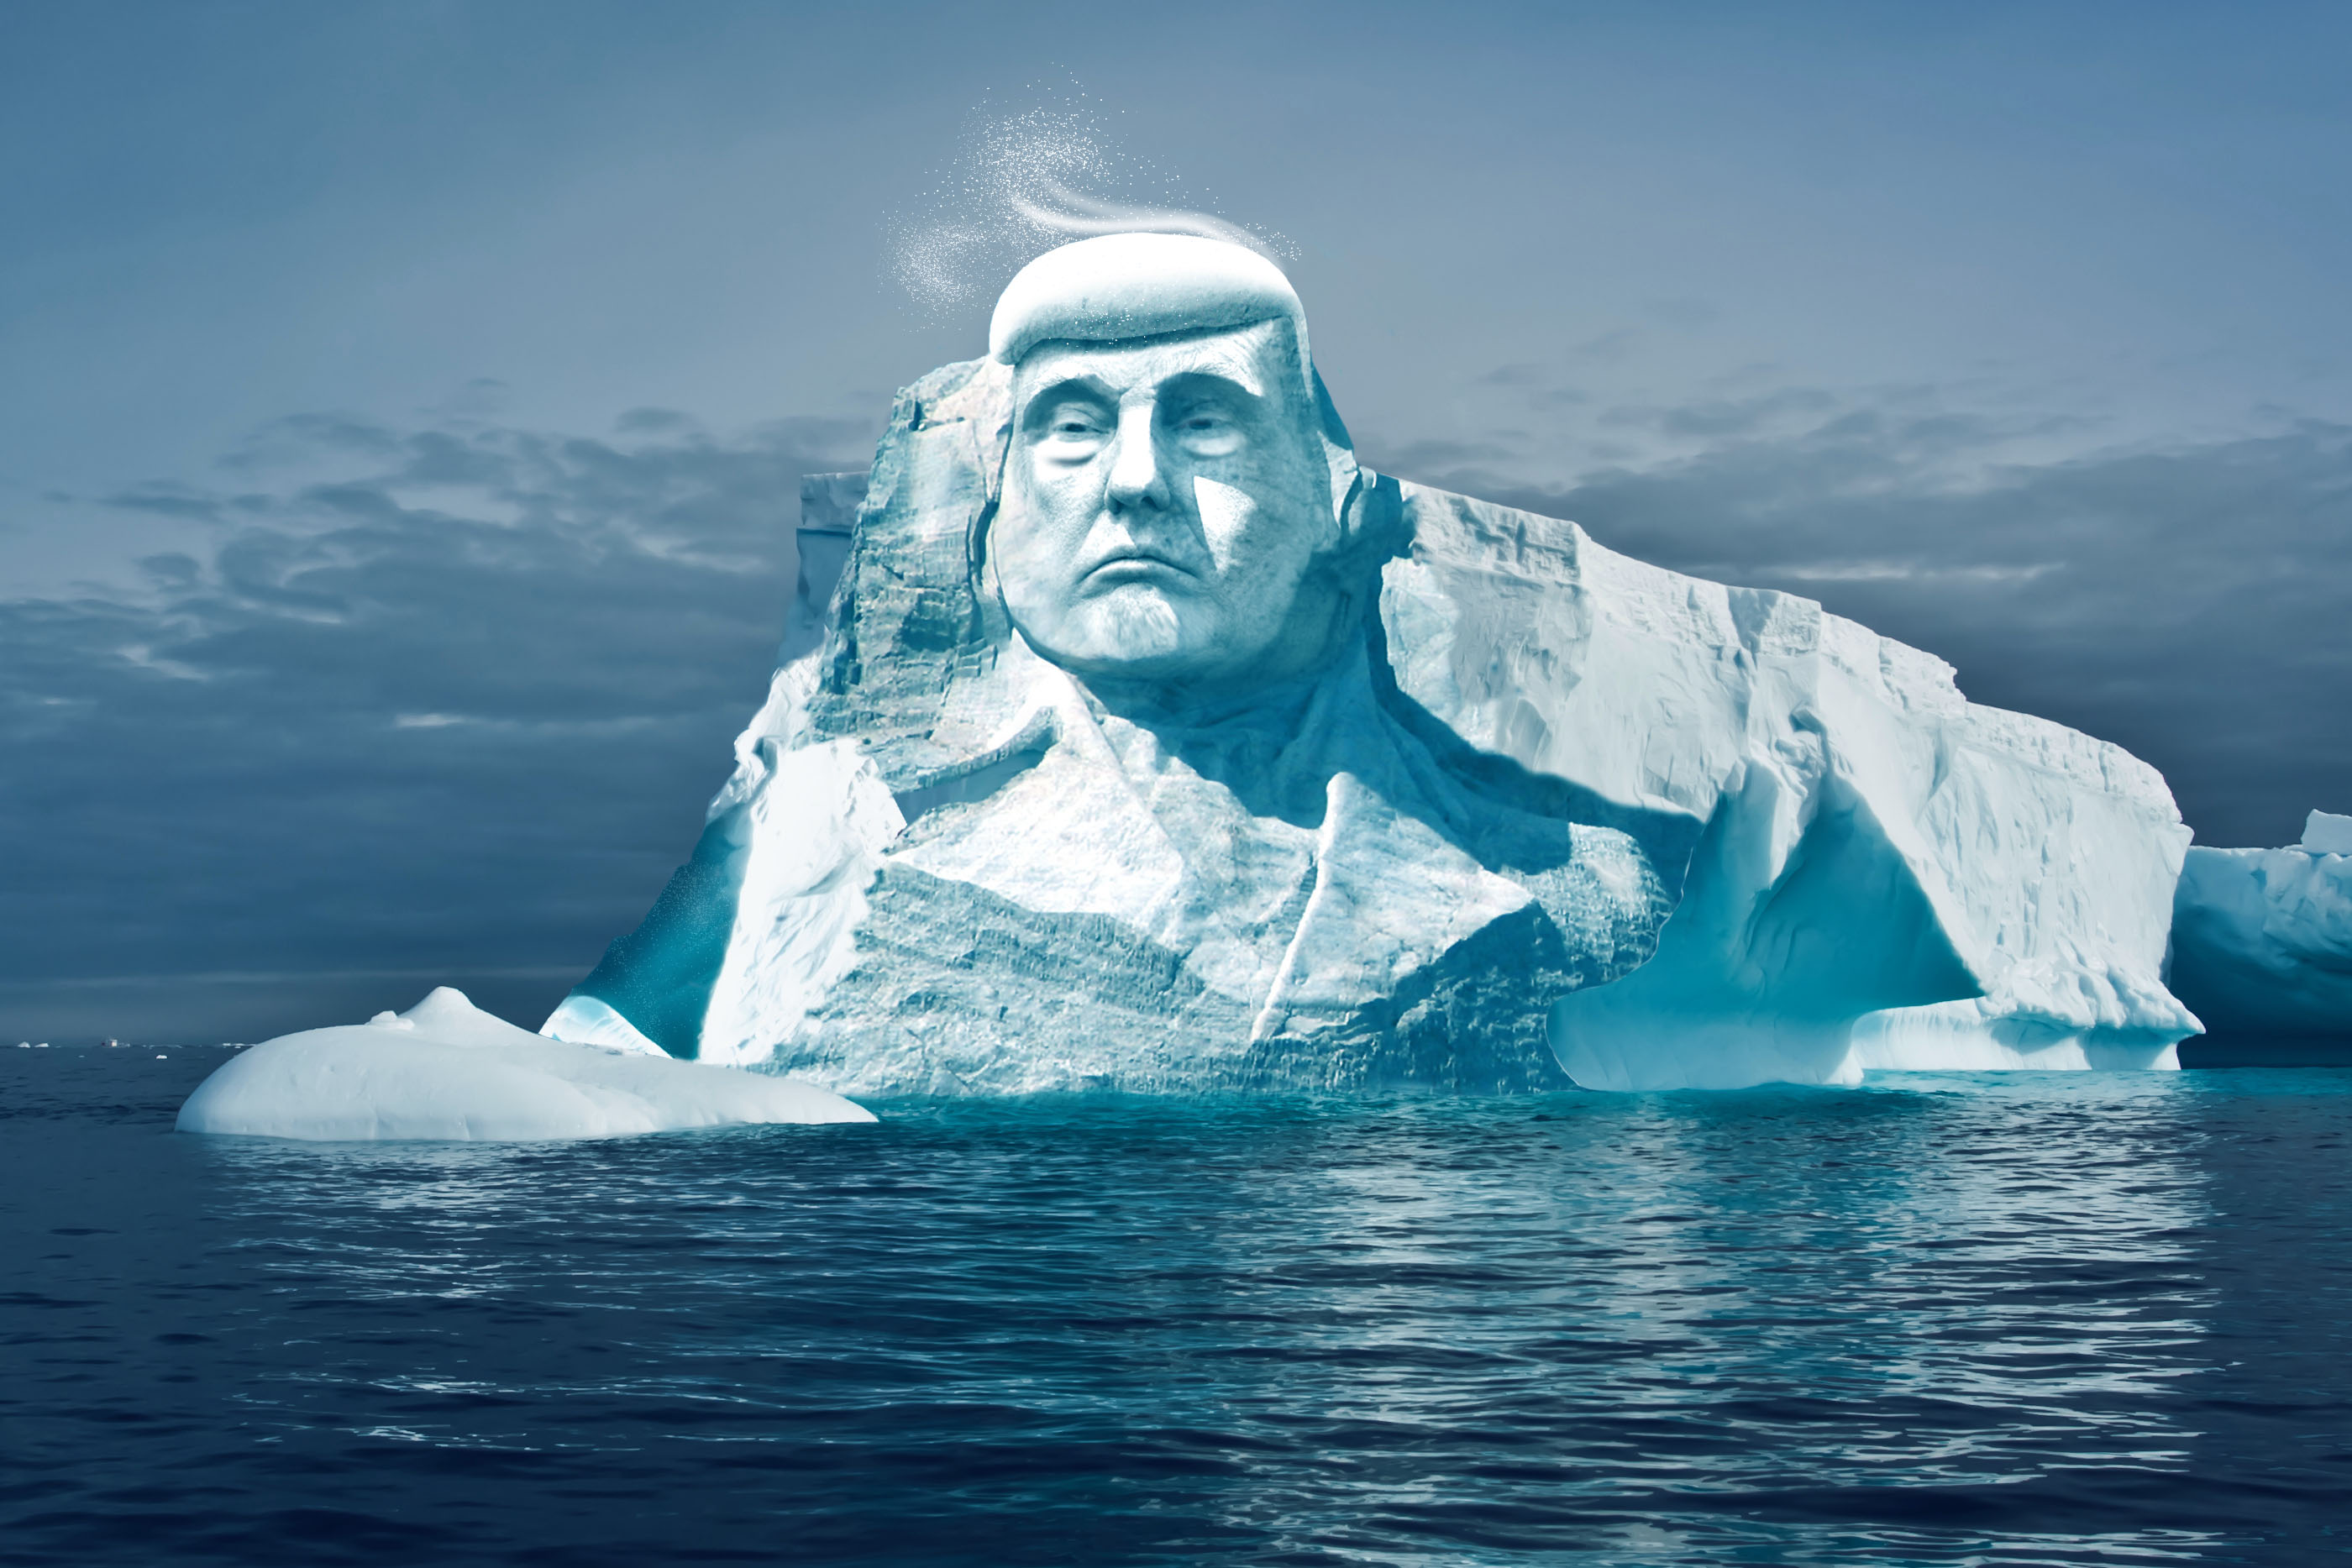 "Увековечат" среди вечной мерзлоты: изо льда в Арктике экологи создадут монумент Дональда Трампа - кадры